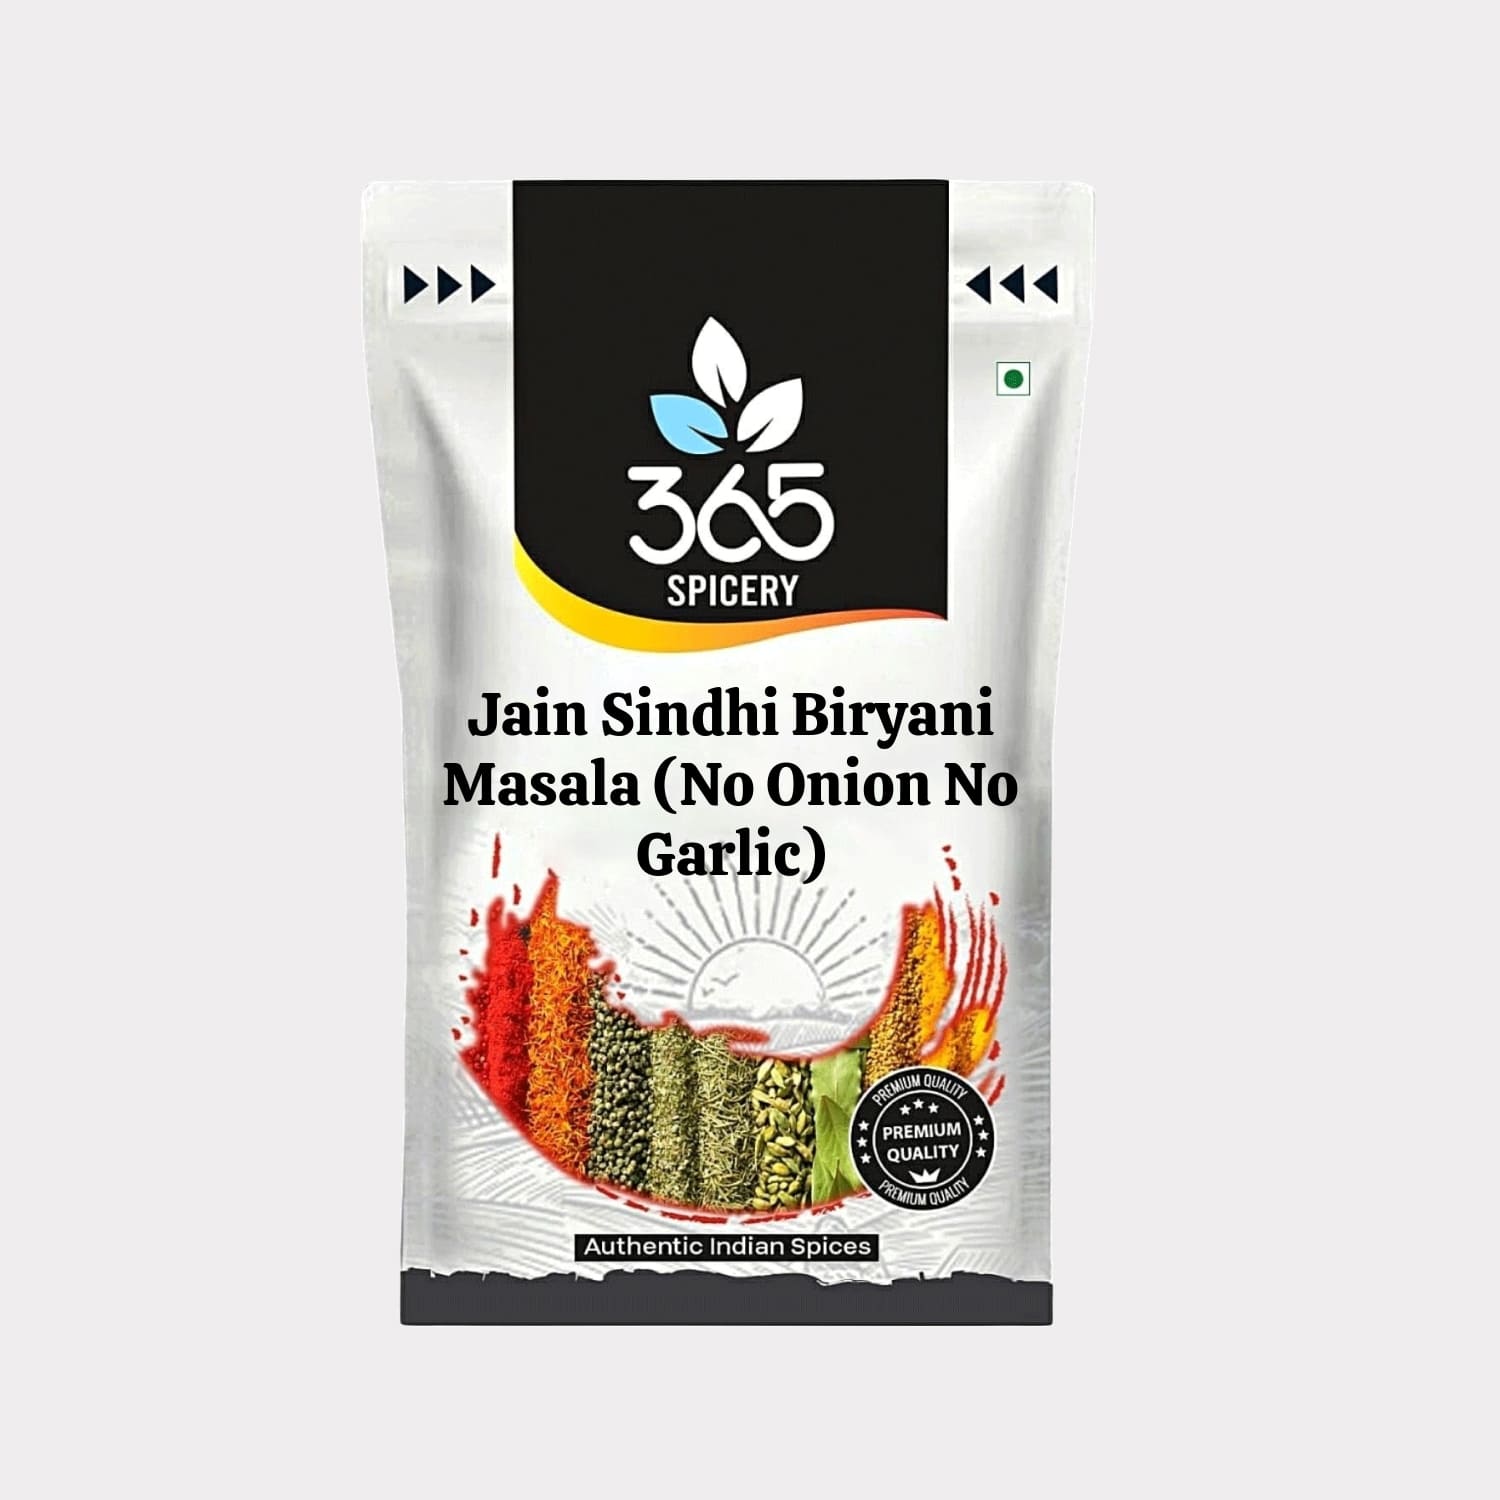 Jain Sindhi Biryani Masala (No Onion No Garlic)